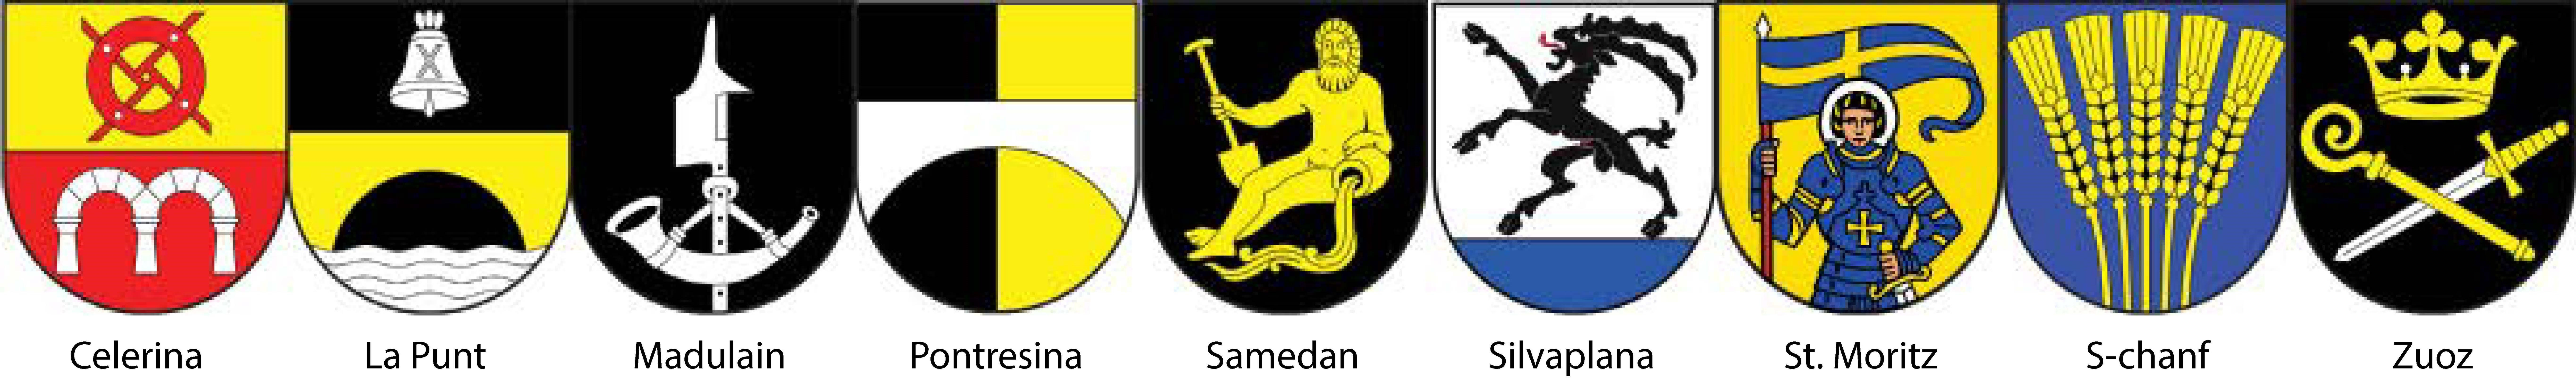 Wappen mit Titel